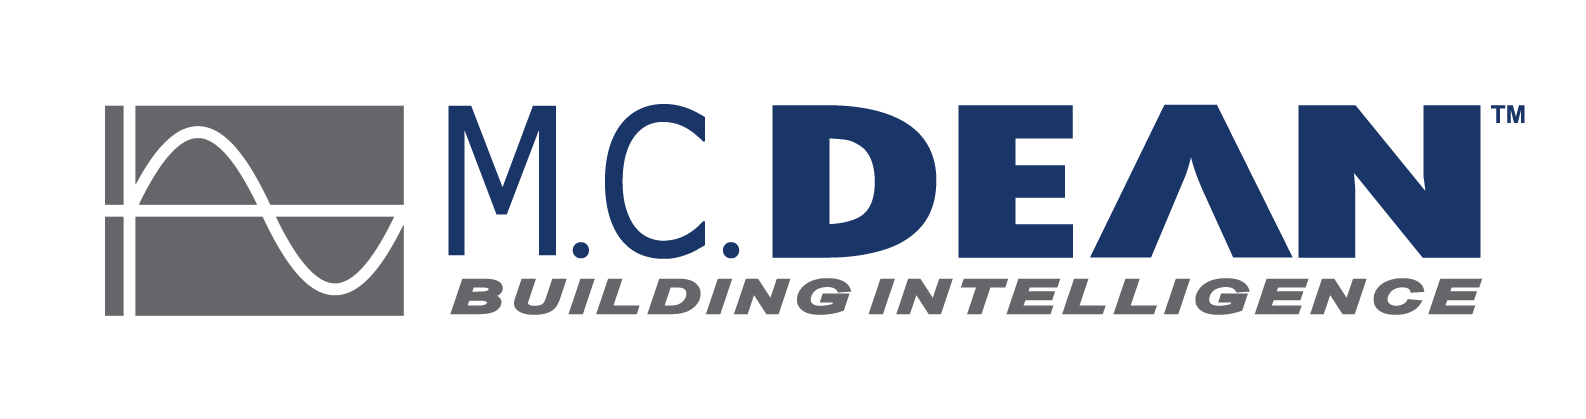 MCD Logo - Color, High Res, Transparent Background 2013